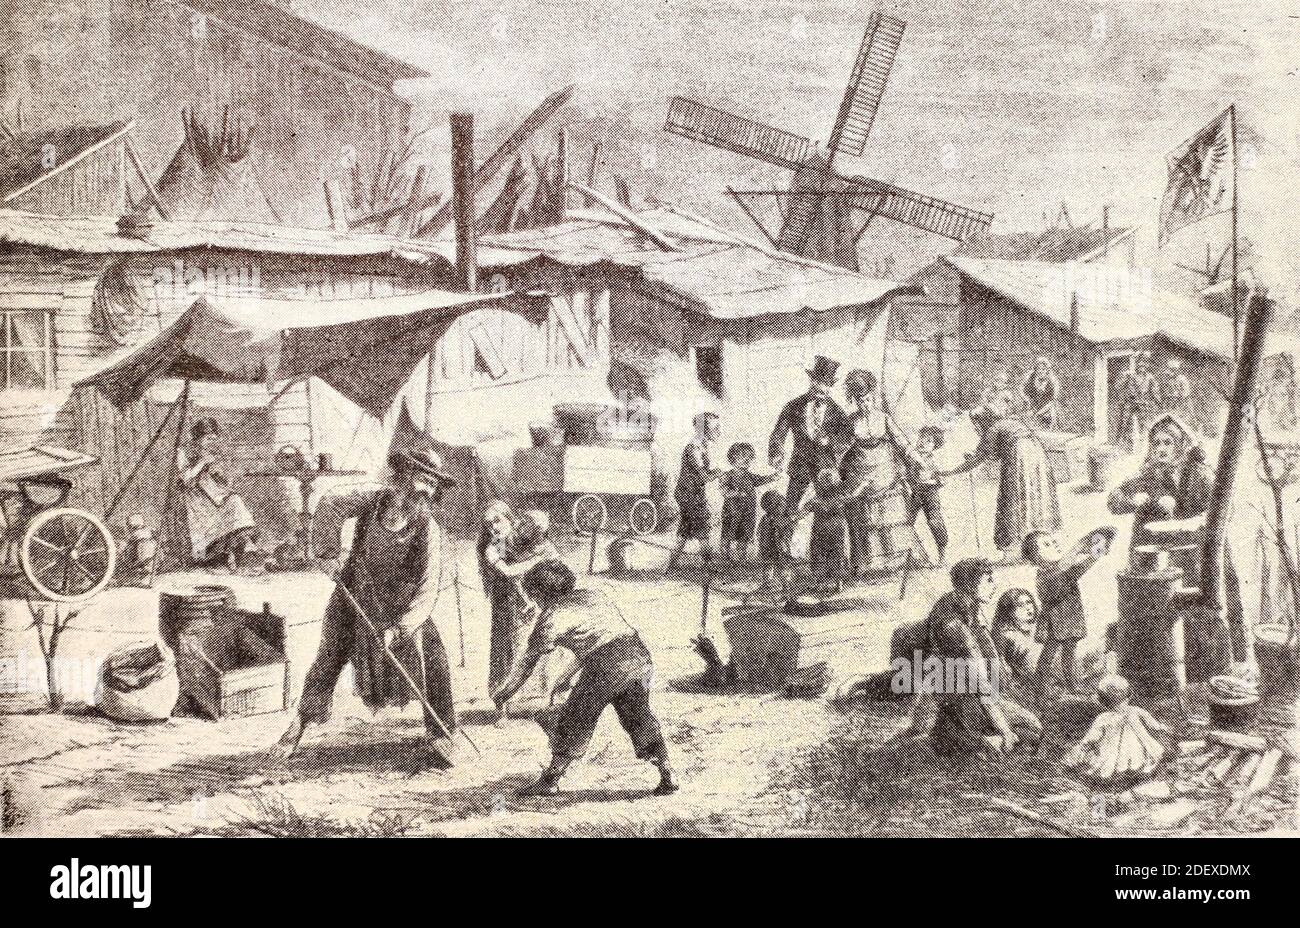 Arme Hütten am Stadtrand von Berlin. Gravur von 1872. Stockfoto